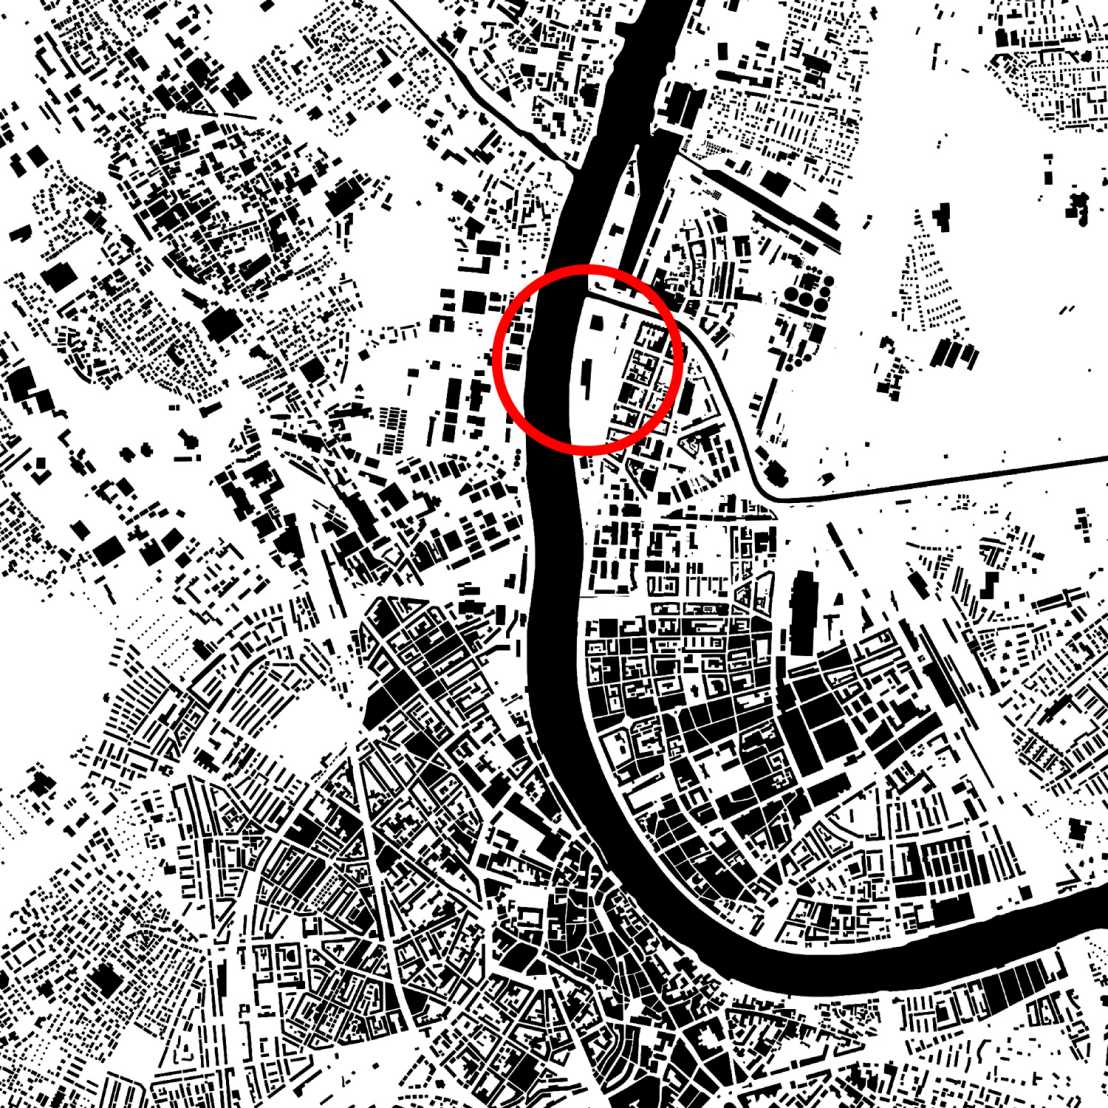 Karte Basel